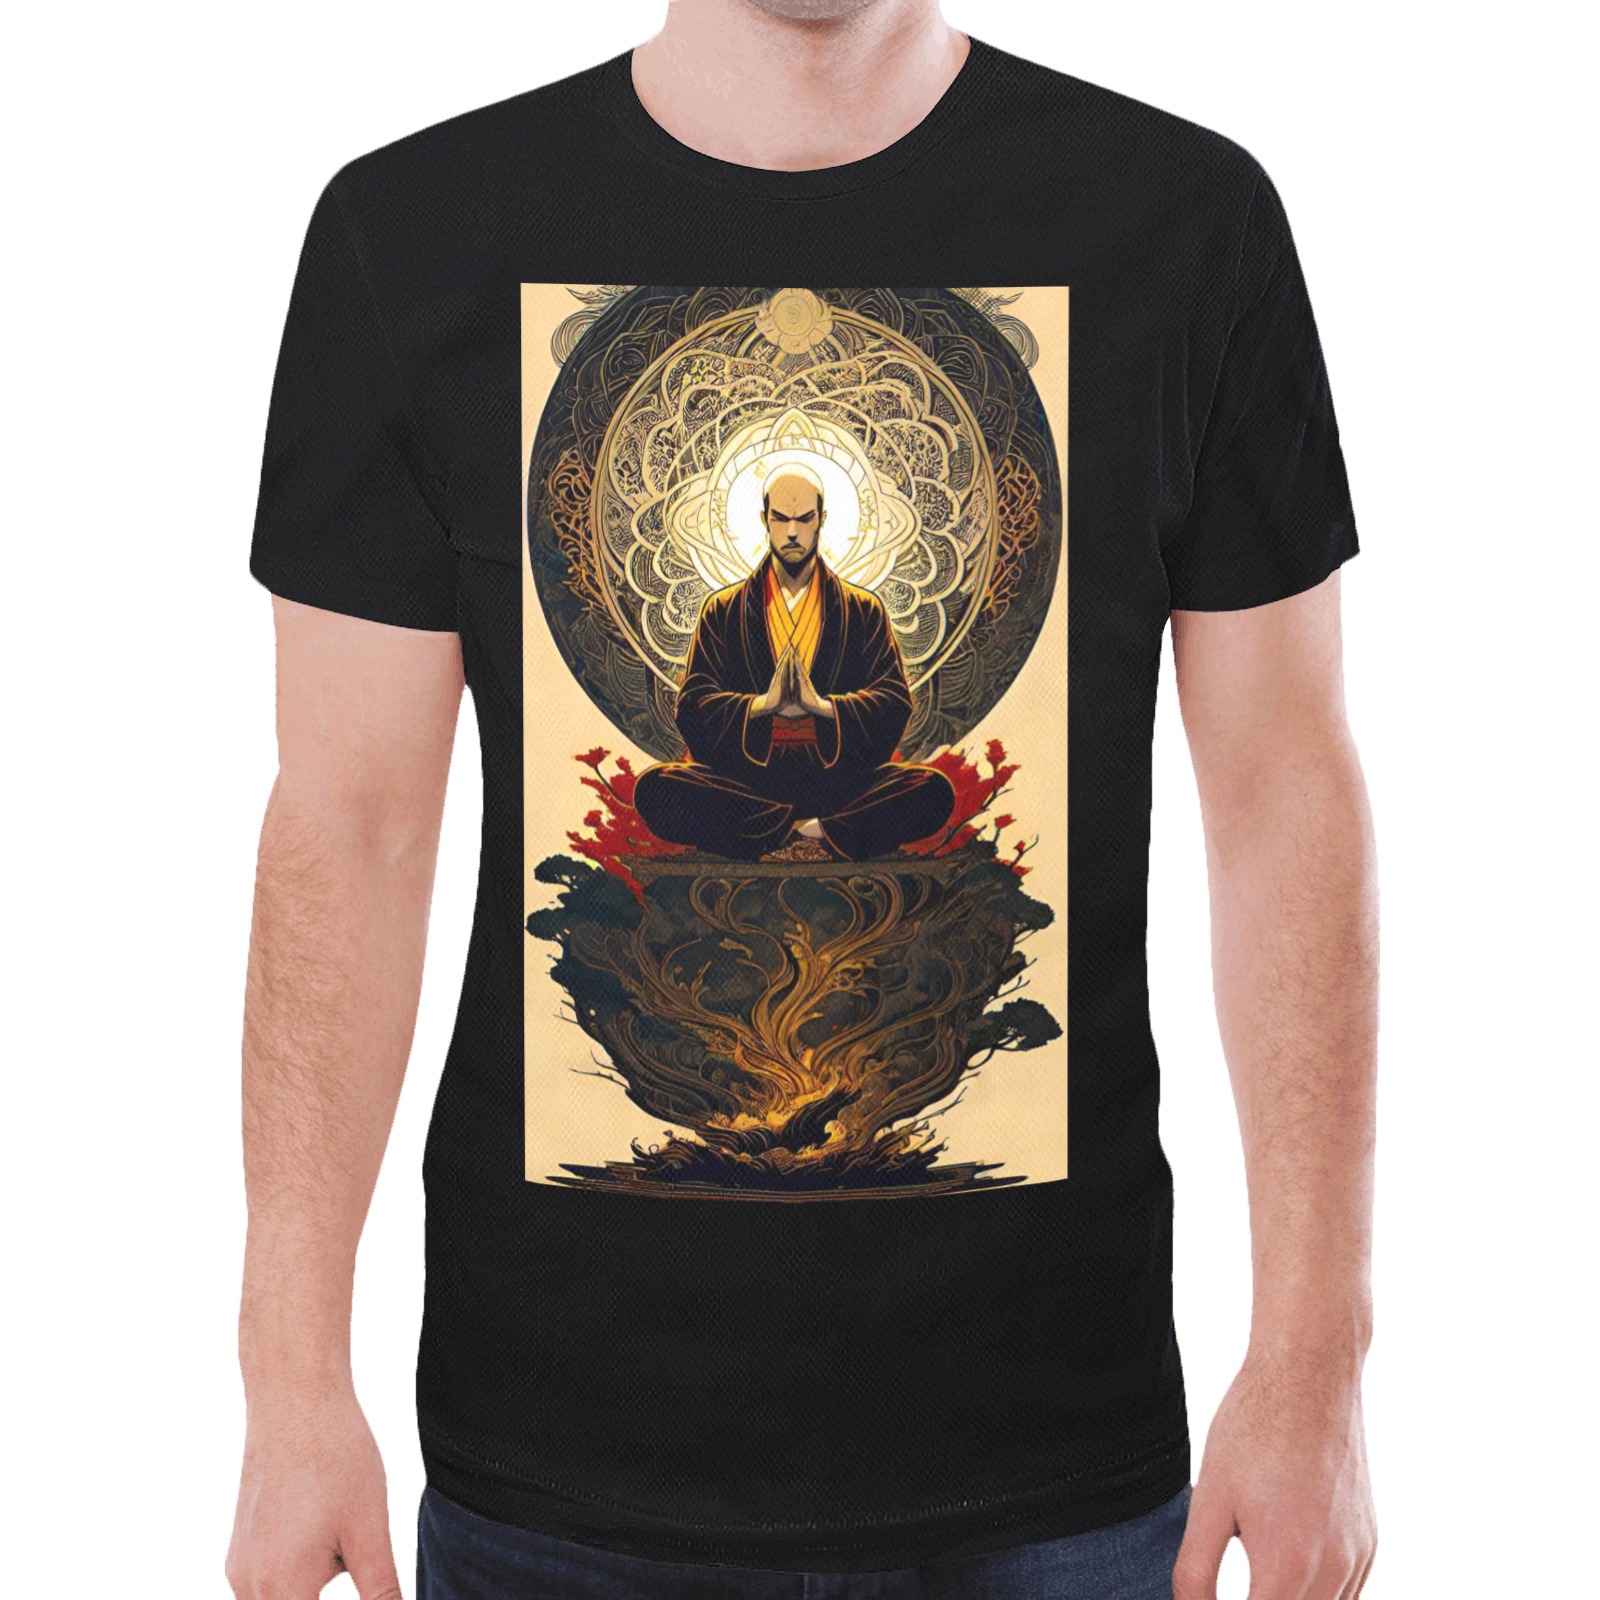 Shaolin Monk Fantasy Art 05 New All Over Print T-shirt for Men (Model T45)